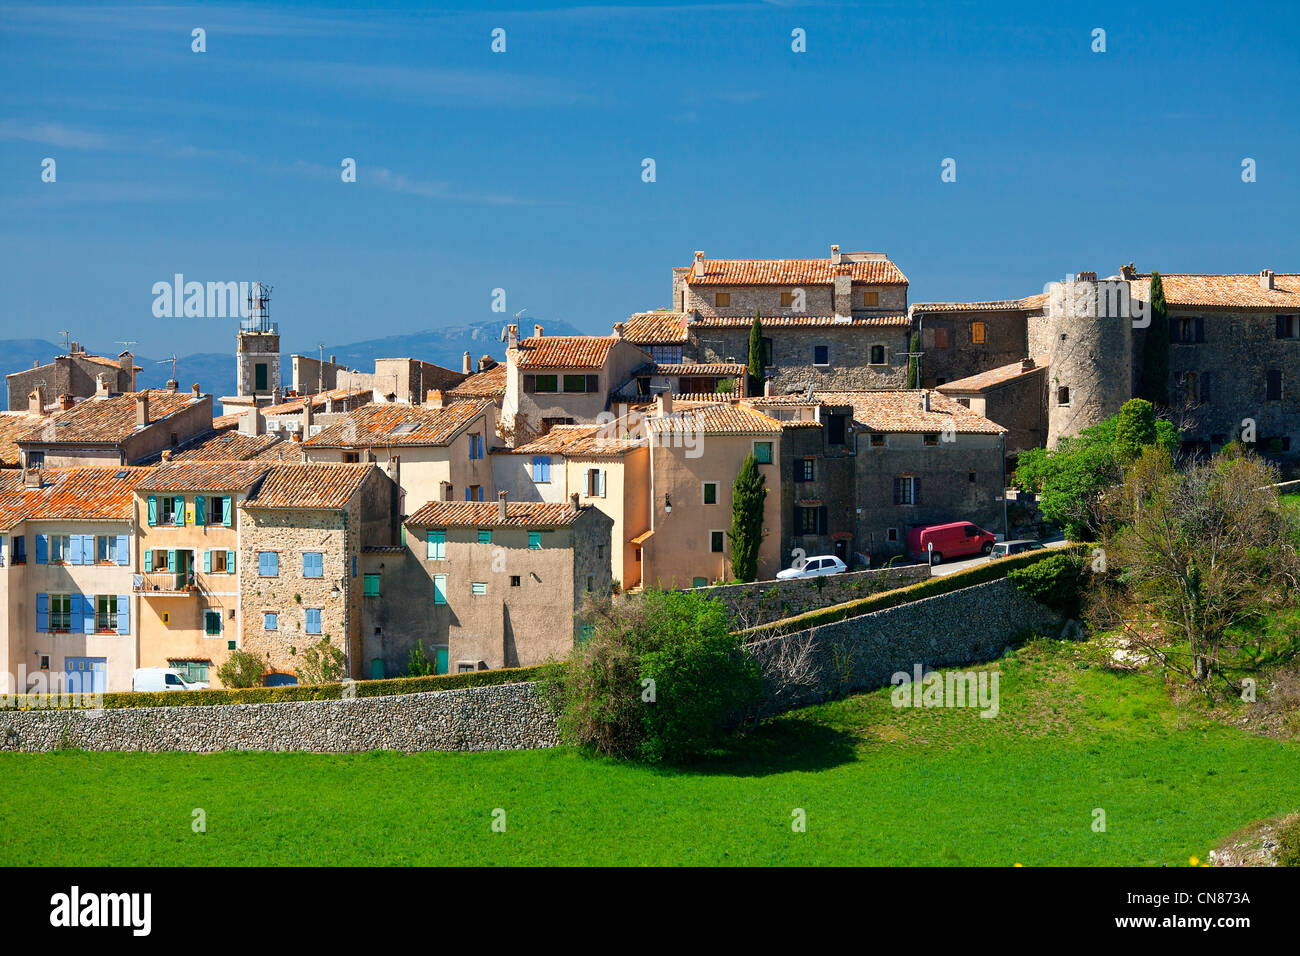 France, Var, Tourtour, village in the sky, labelled Les Plus Beaux Villages de France ( the Most Beautiful Villages of France) Stock Photo